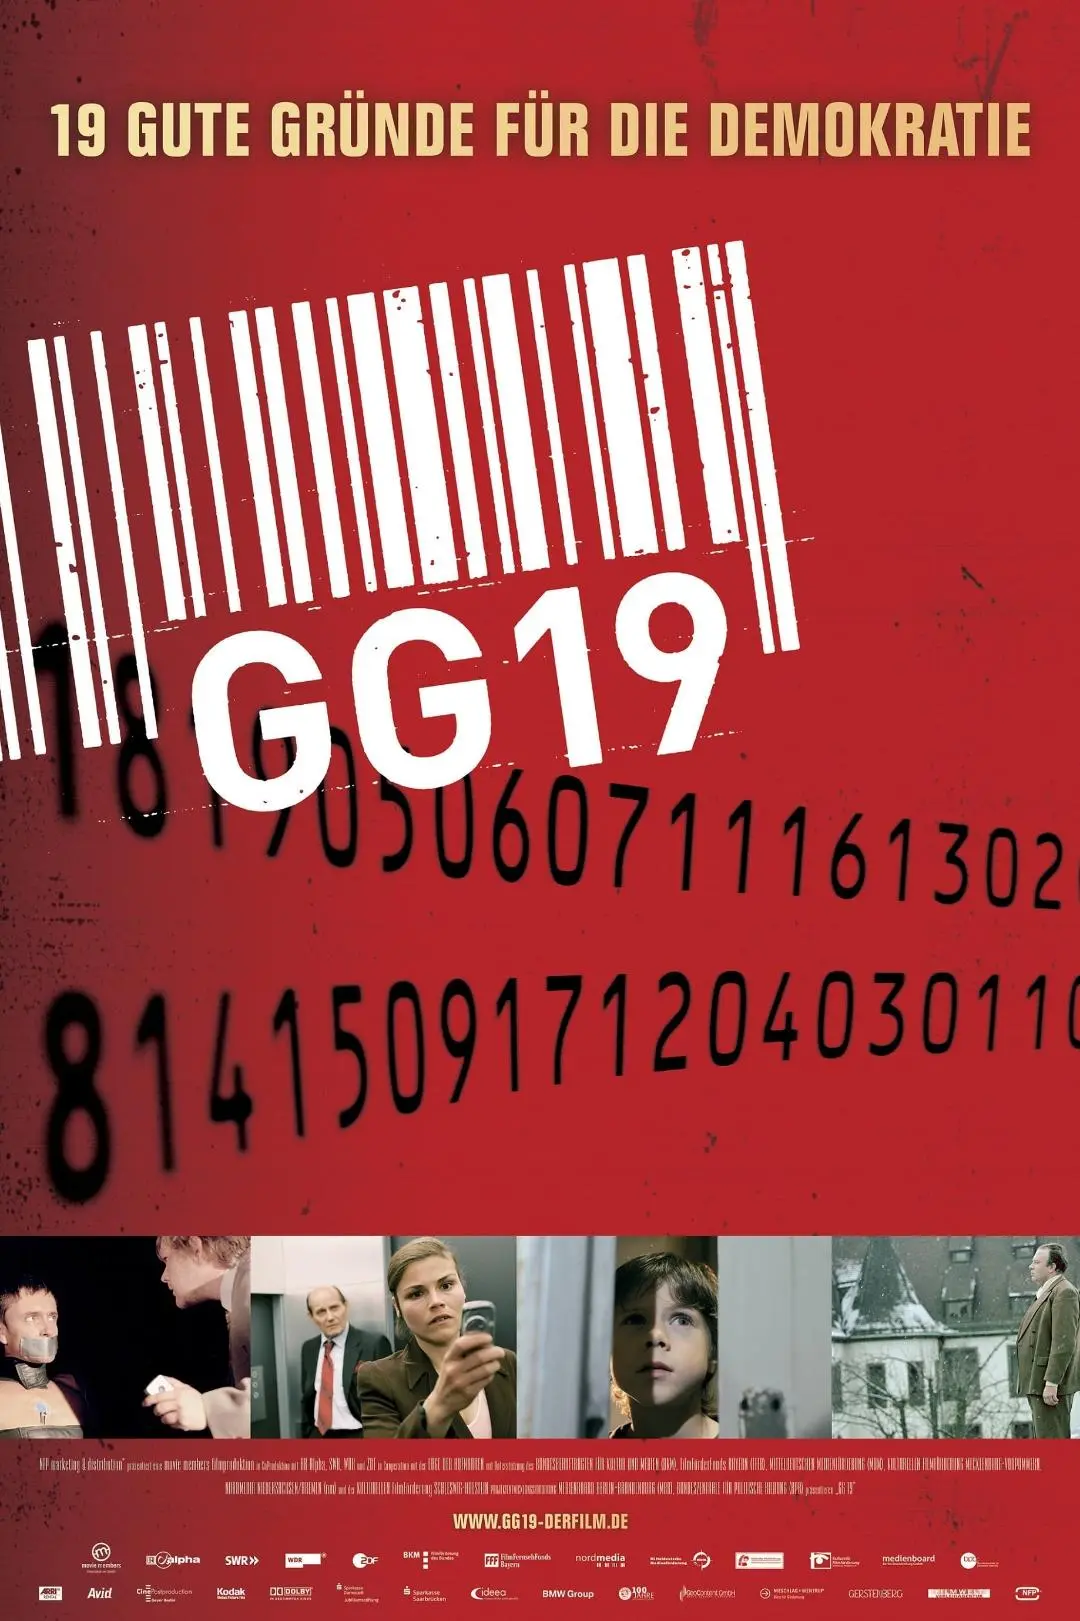 GG 19 - Eine Reise durch Deutschland in 19 Artikeln_peliplat